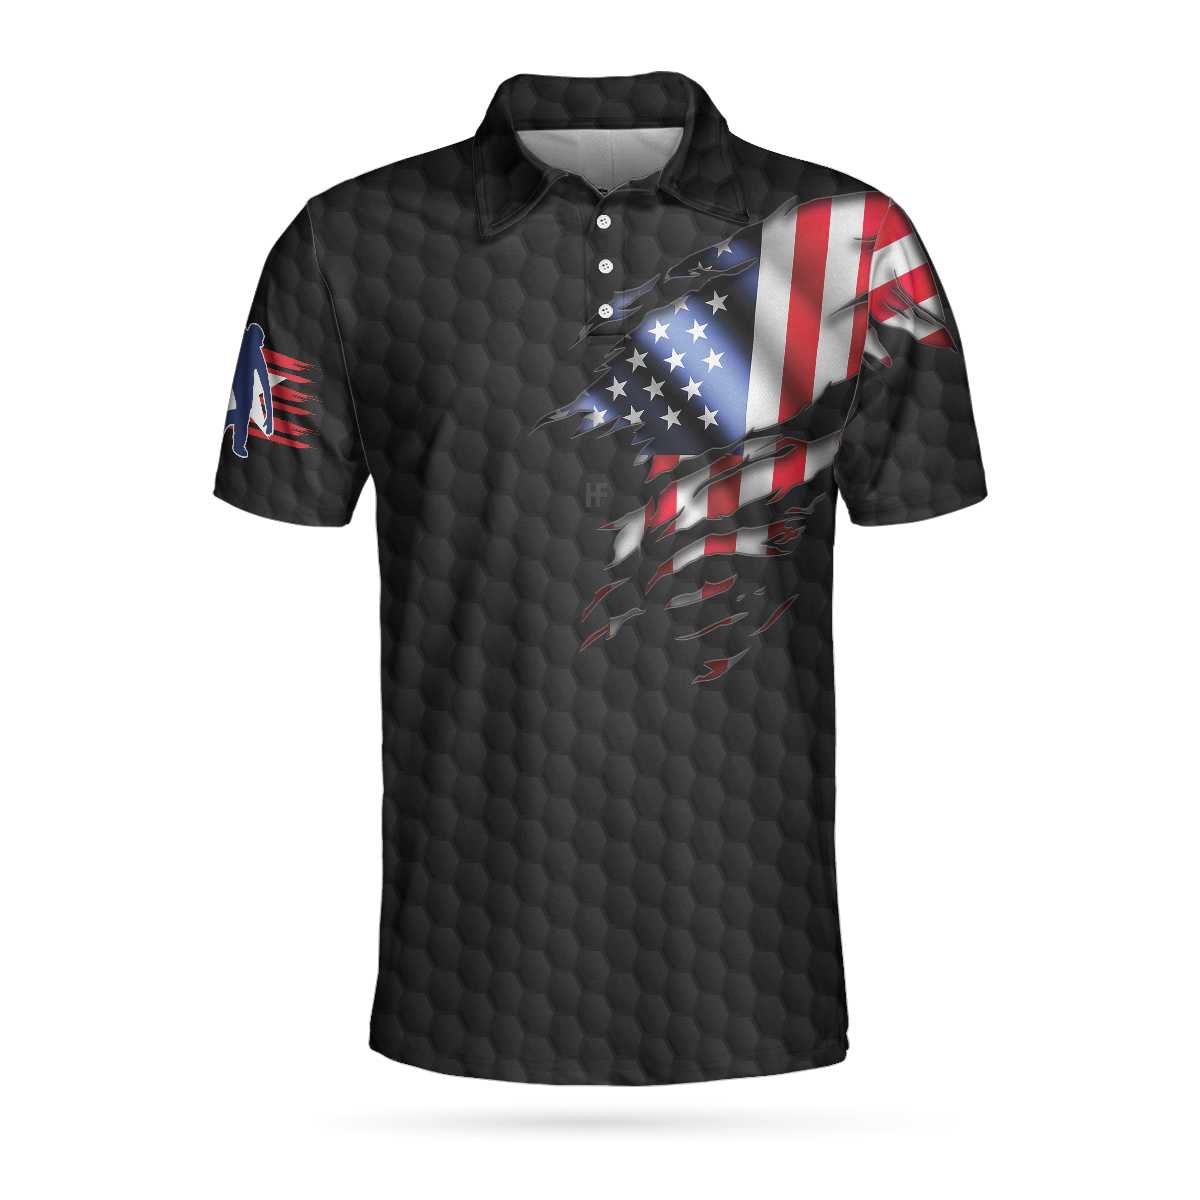 Black American Flag Bowling Polo Shirt/ Cool Usa Flag Bowling Shirt For Men/ Bowling Shirt Uniform